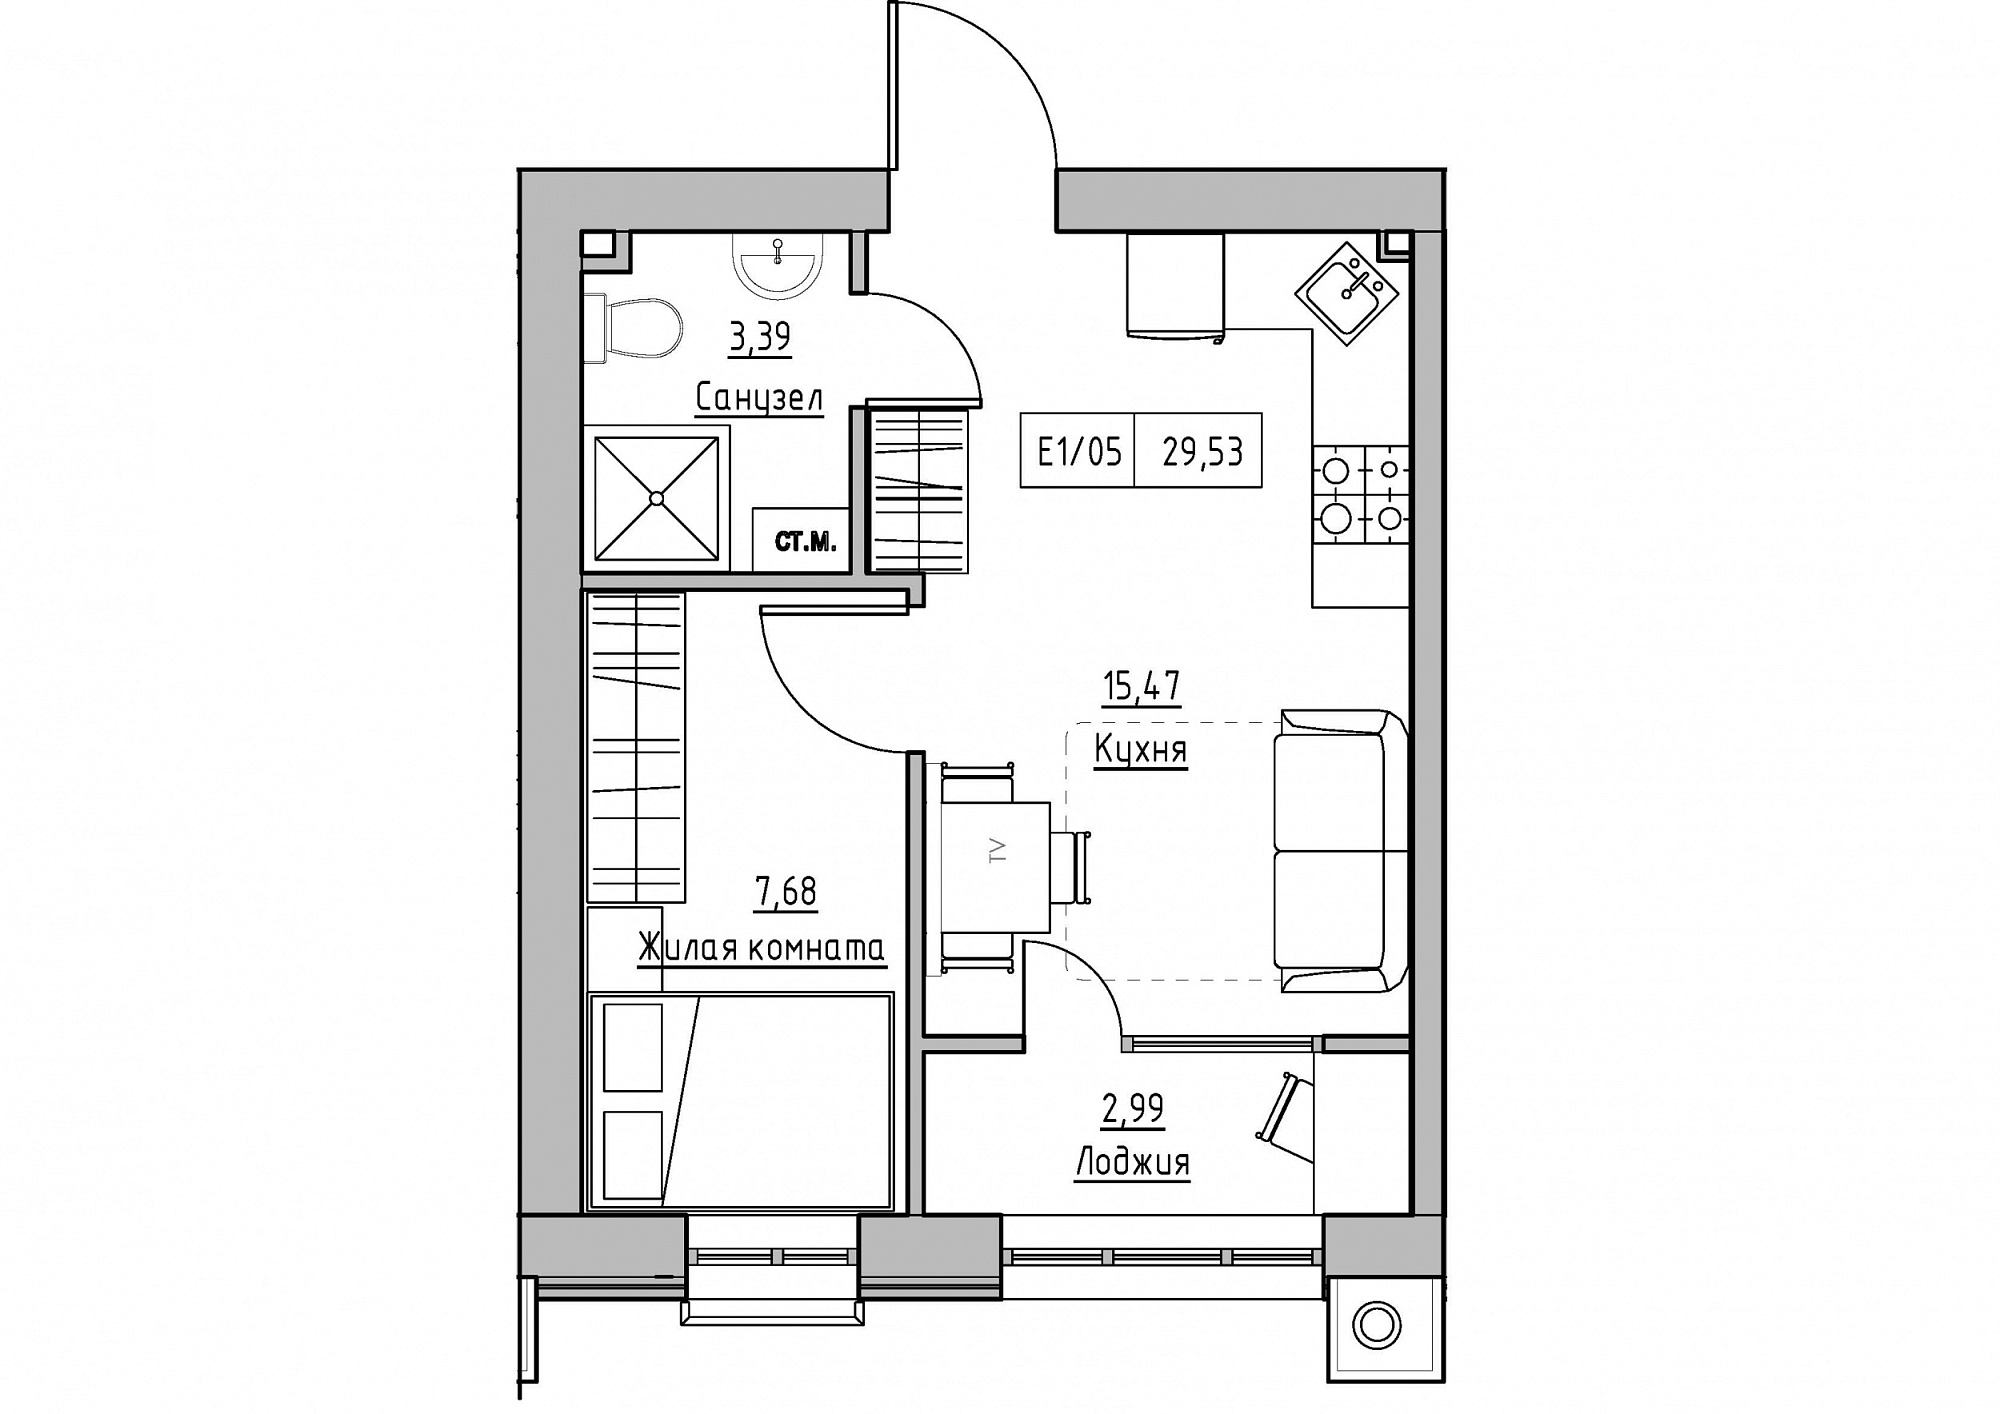 Планування 1-к квартира площею 29.53м2, KS-011-04/0010.